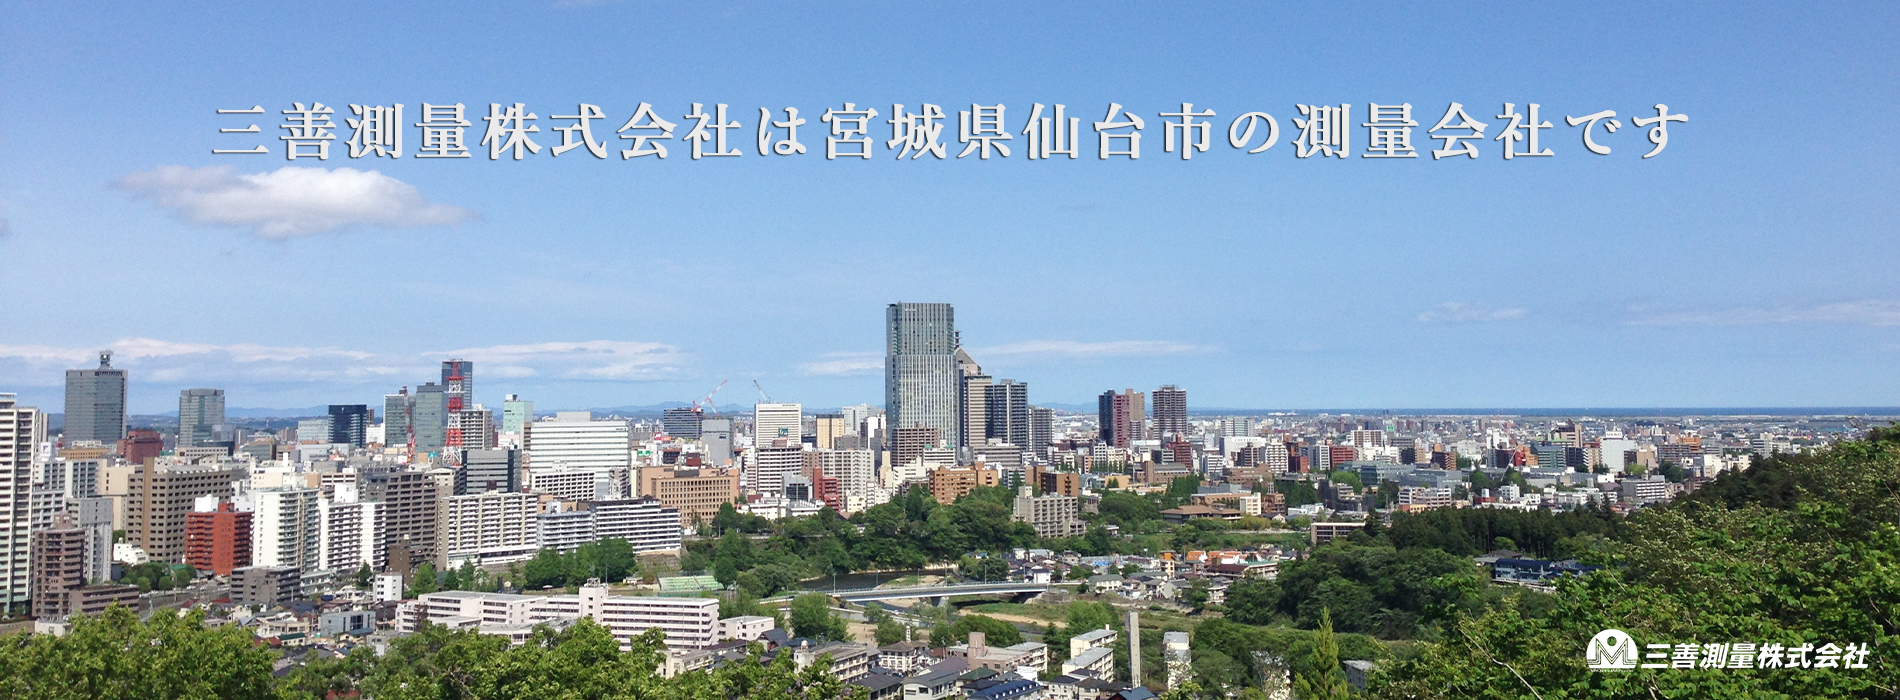 三善測量株式会社は宮城県仙台市の会社です